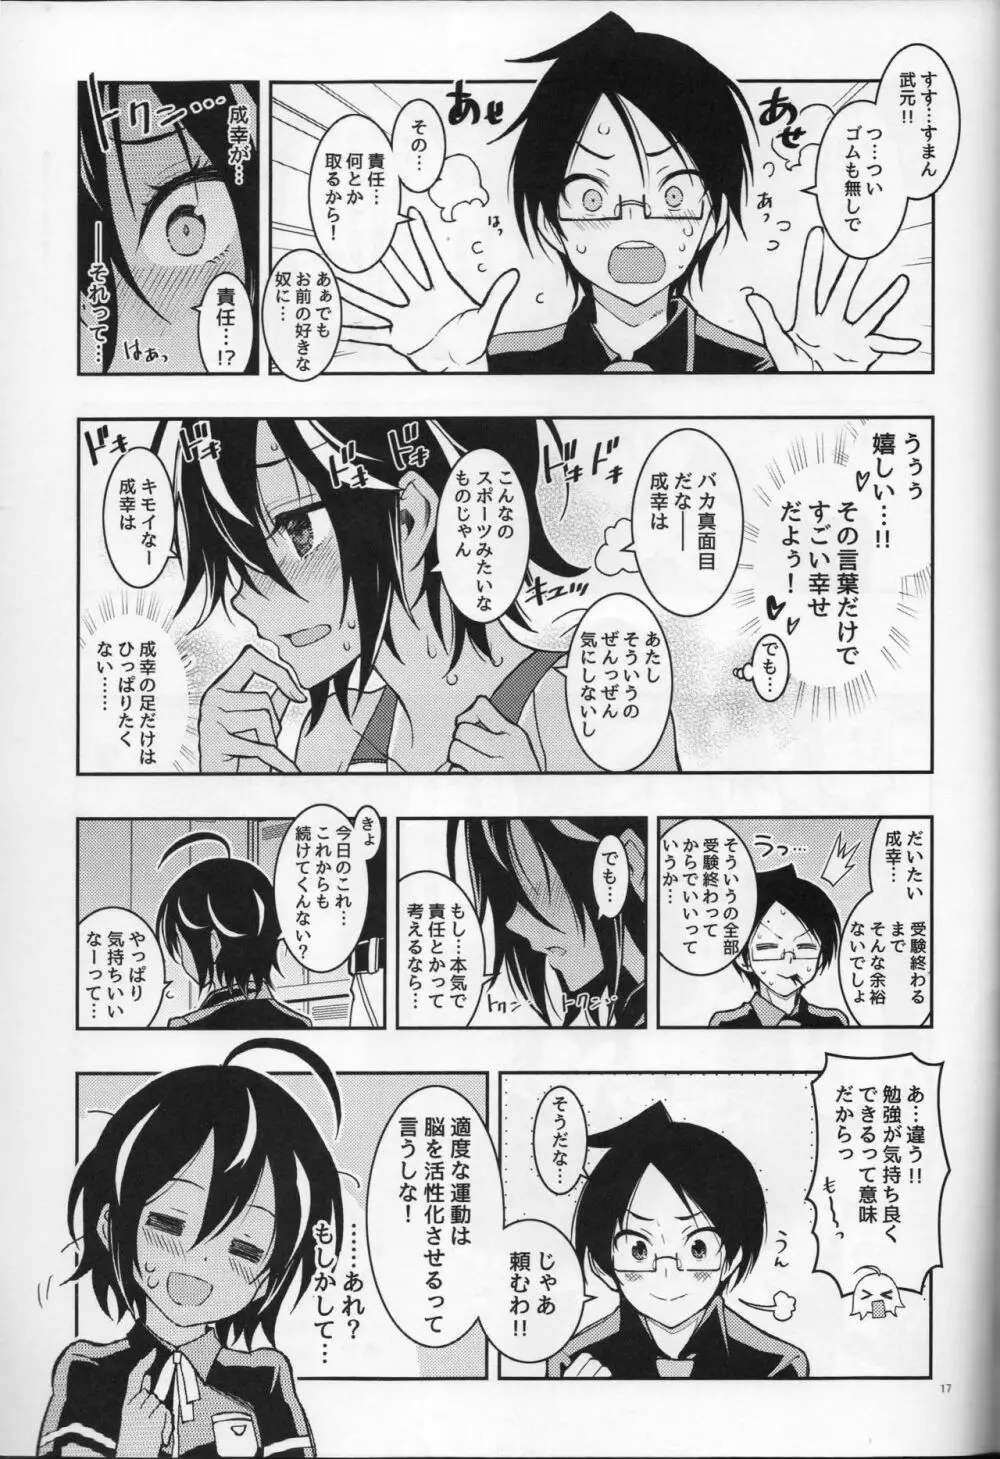 BOKUTACHIHA URUKAGA KAWAII 16ページ